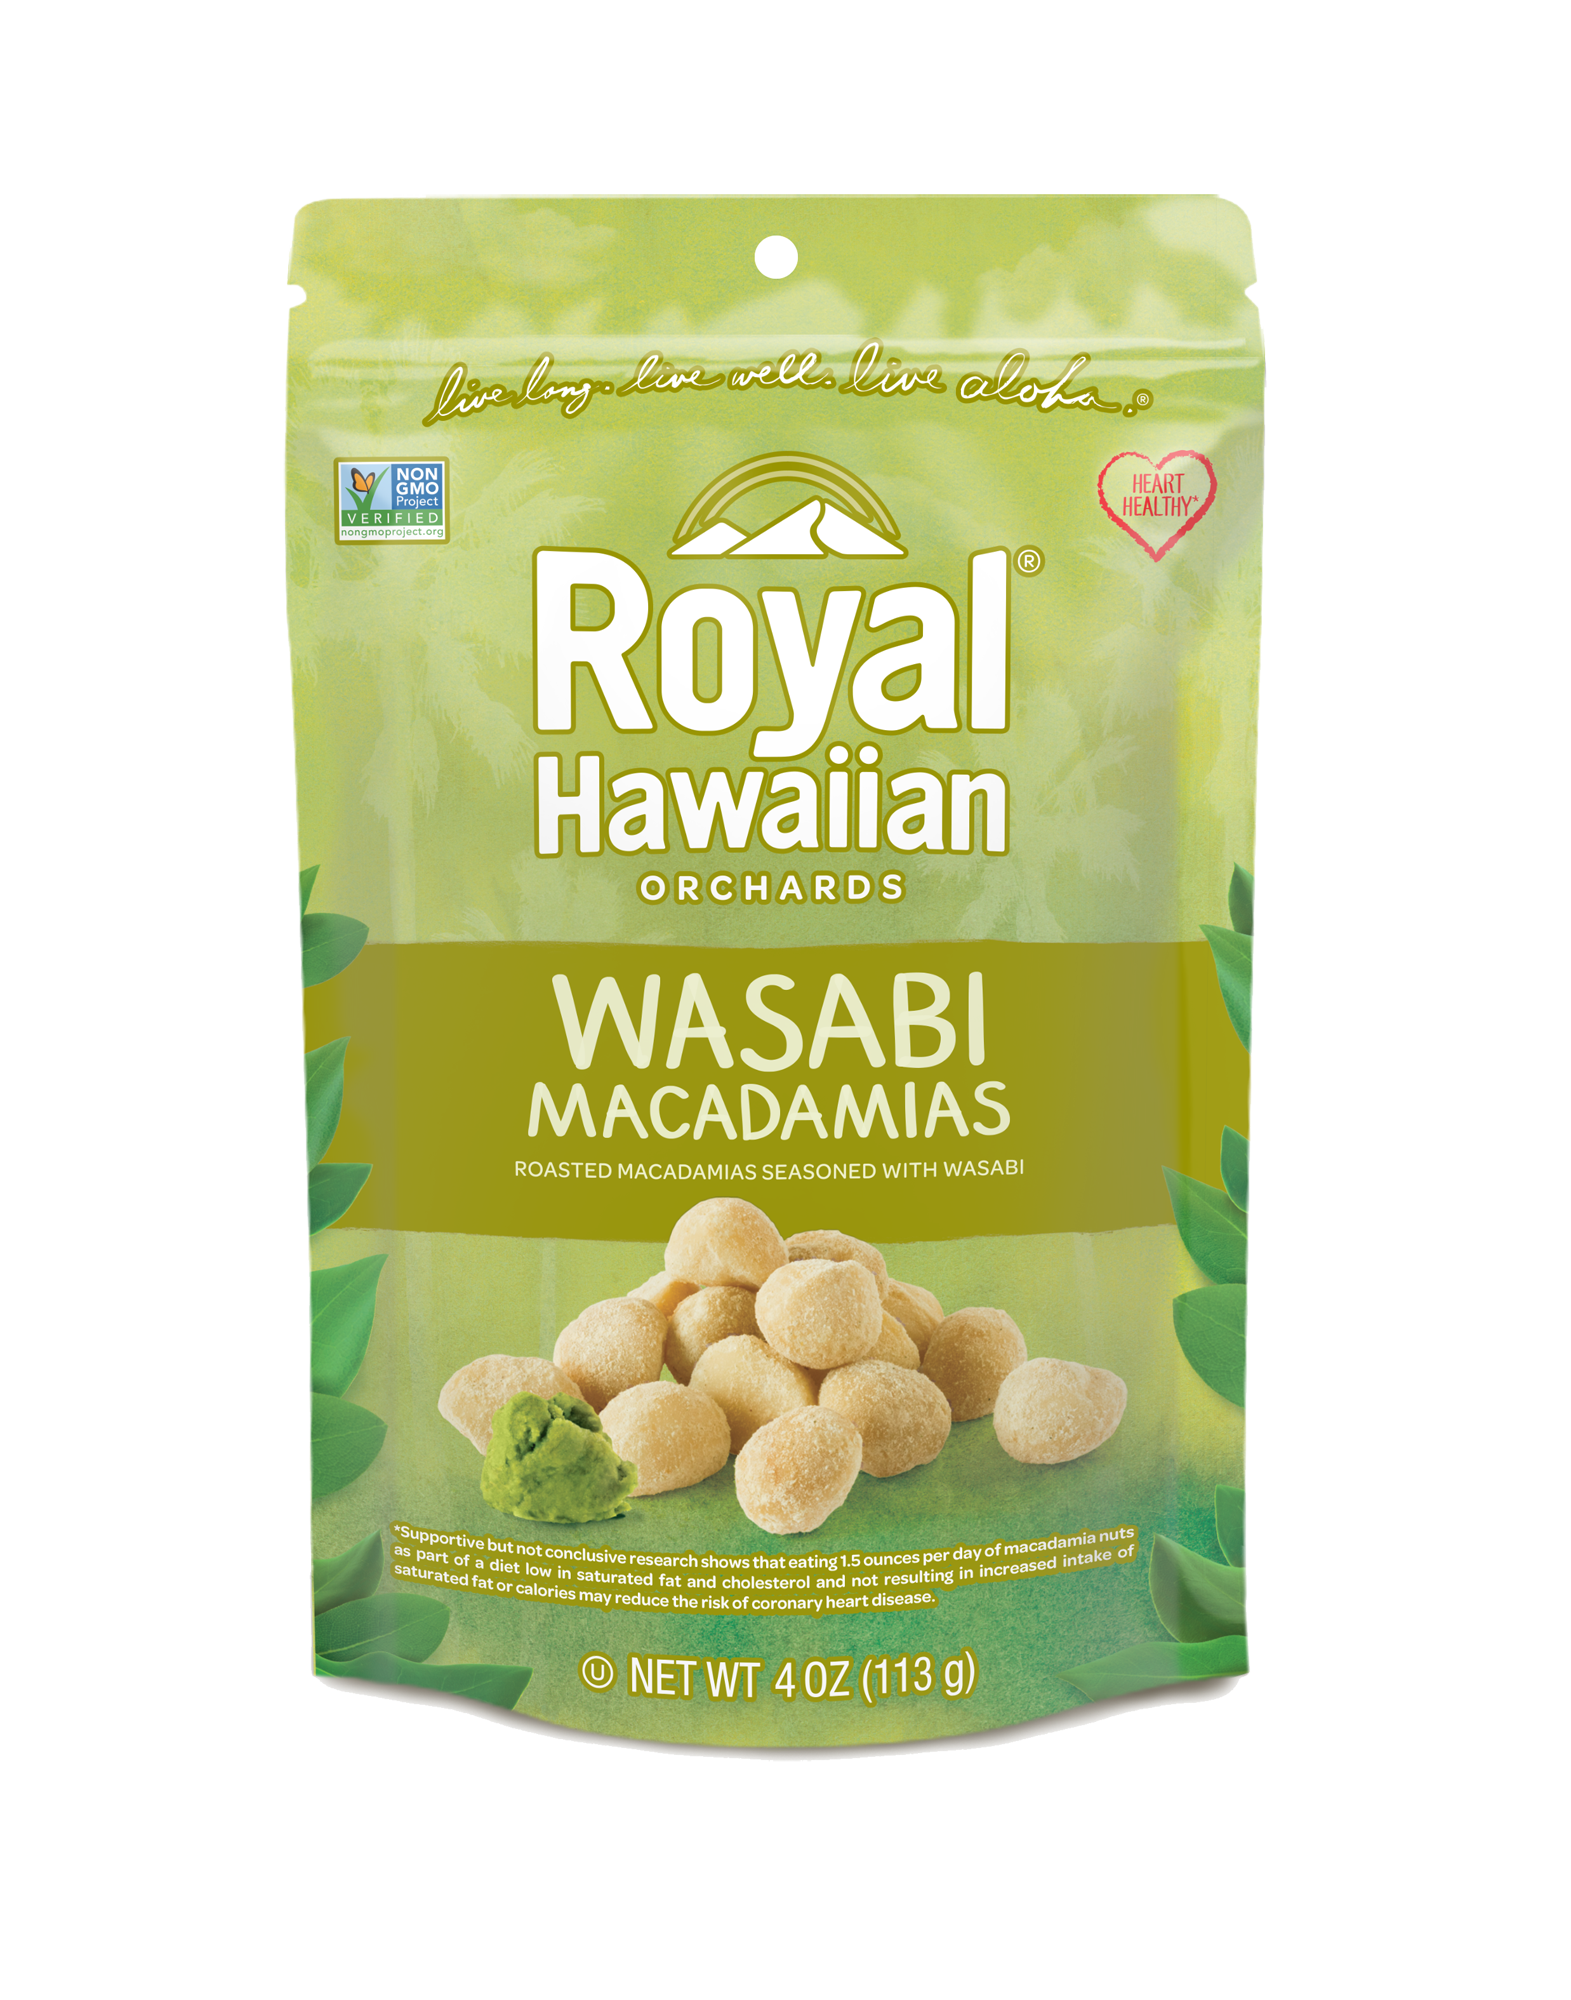 Noix de macadamias au wasabi - Royal Hawaiian Ochards